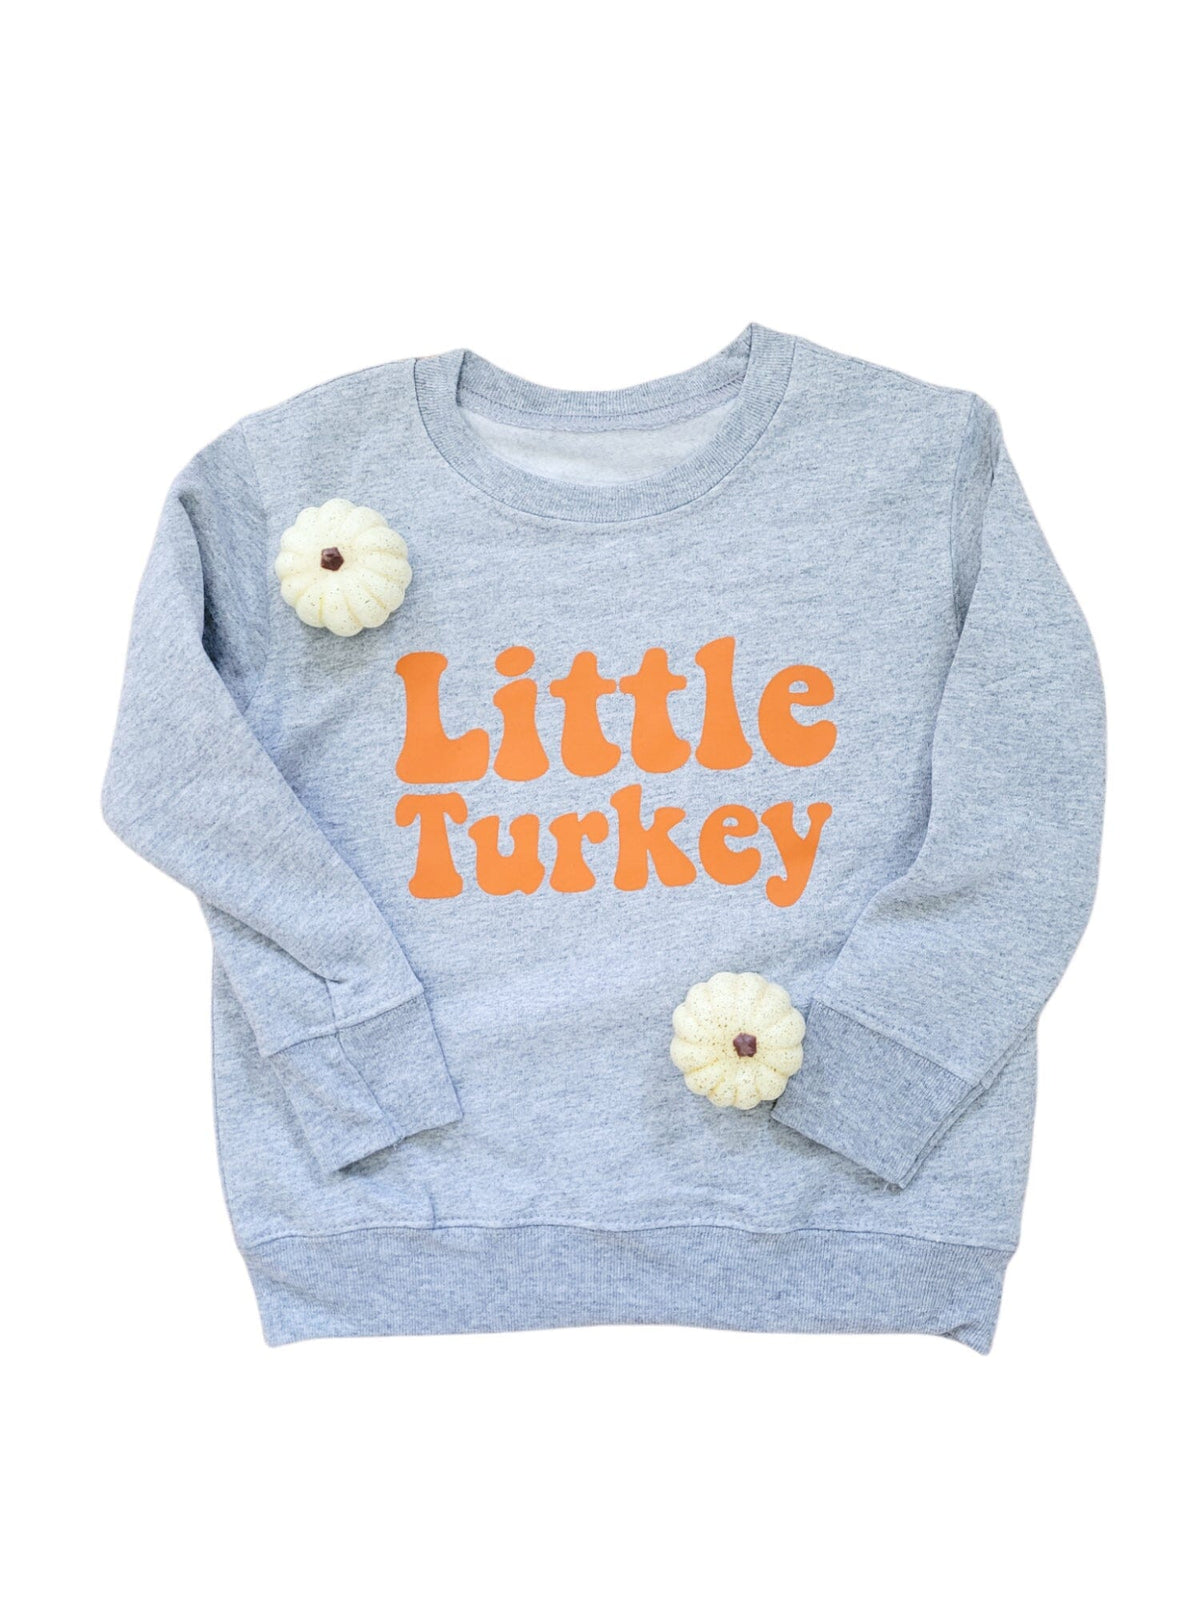 Little Turkey Toddler Sweatshirt